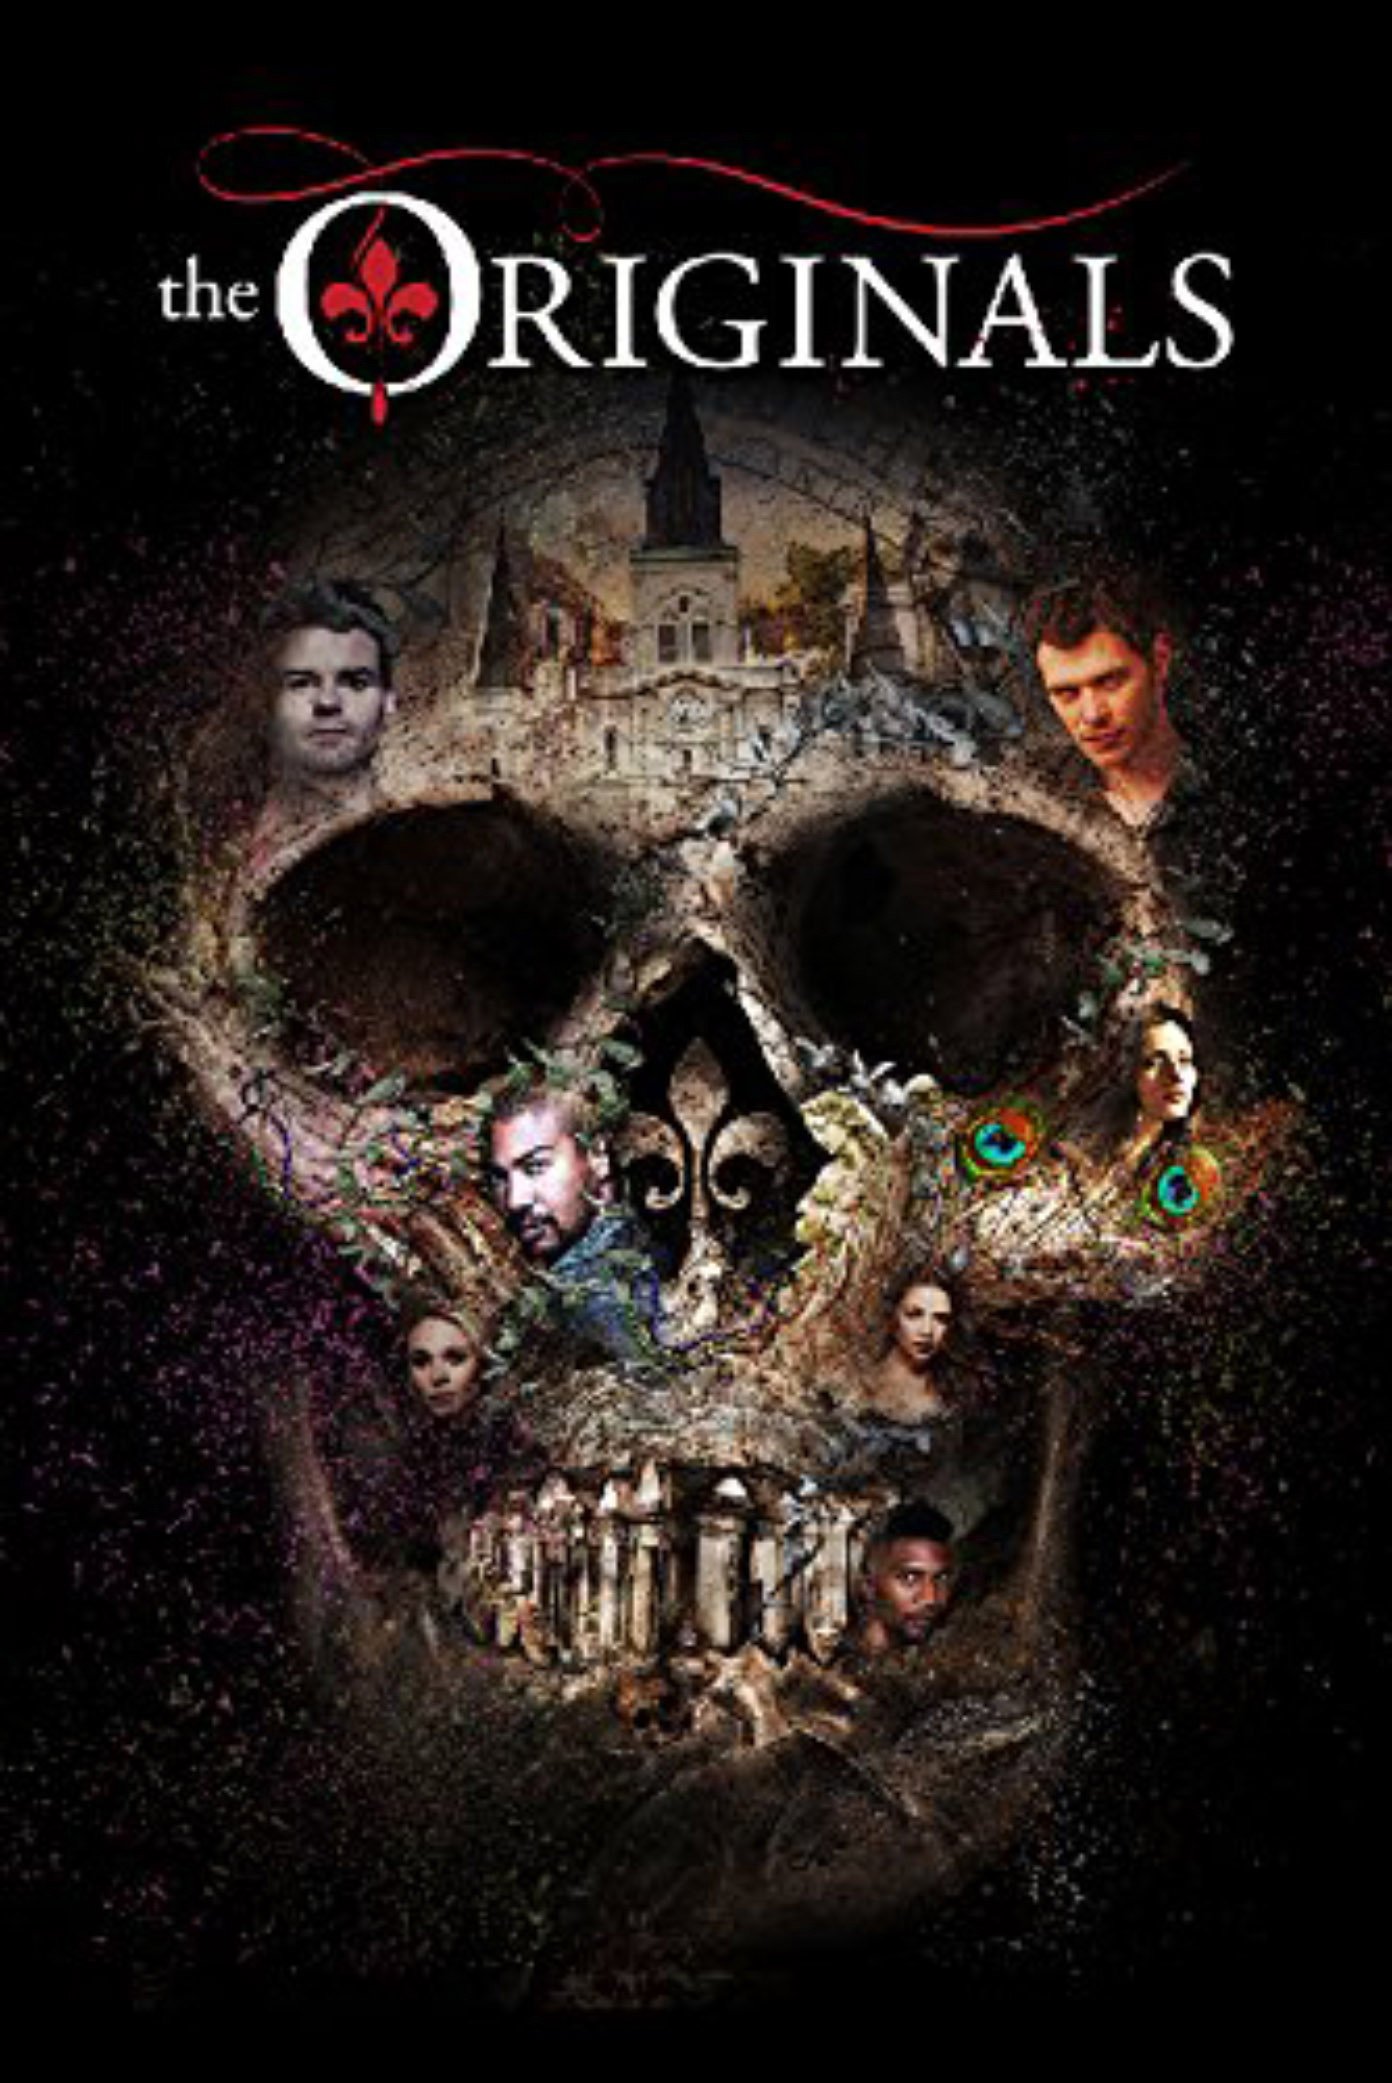 The Originals - Season 3 DVD. Review